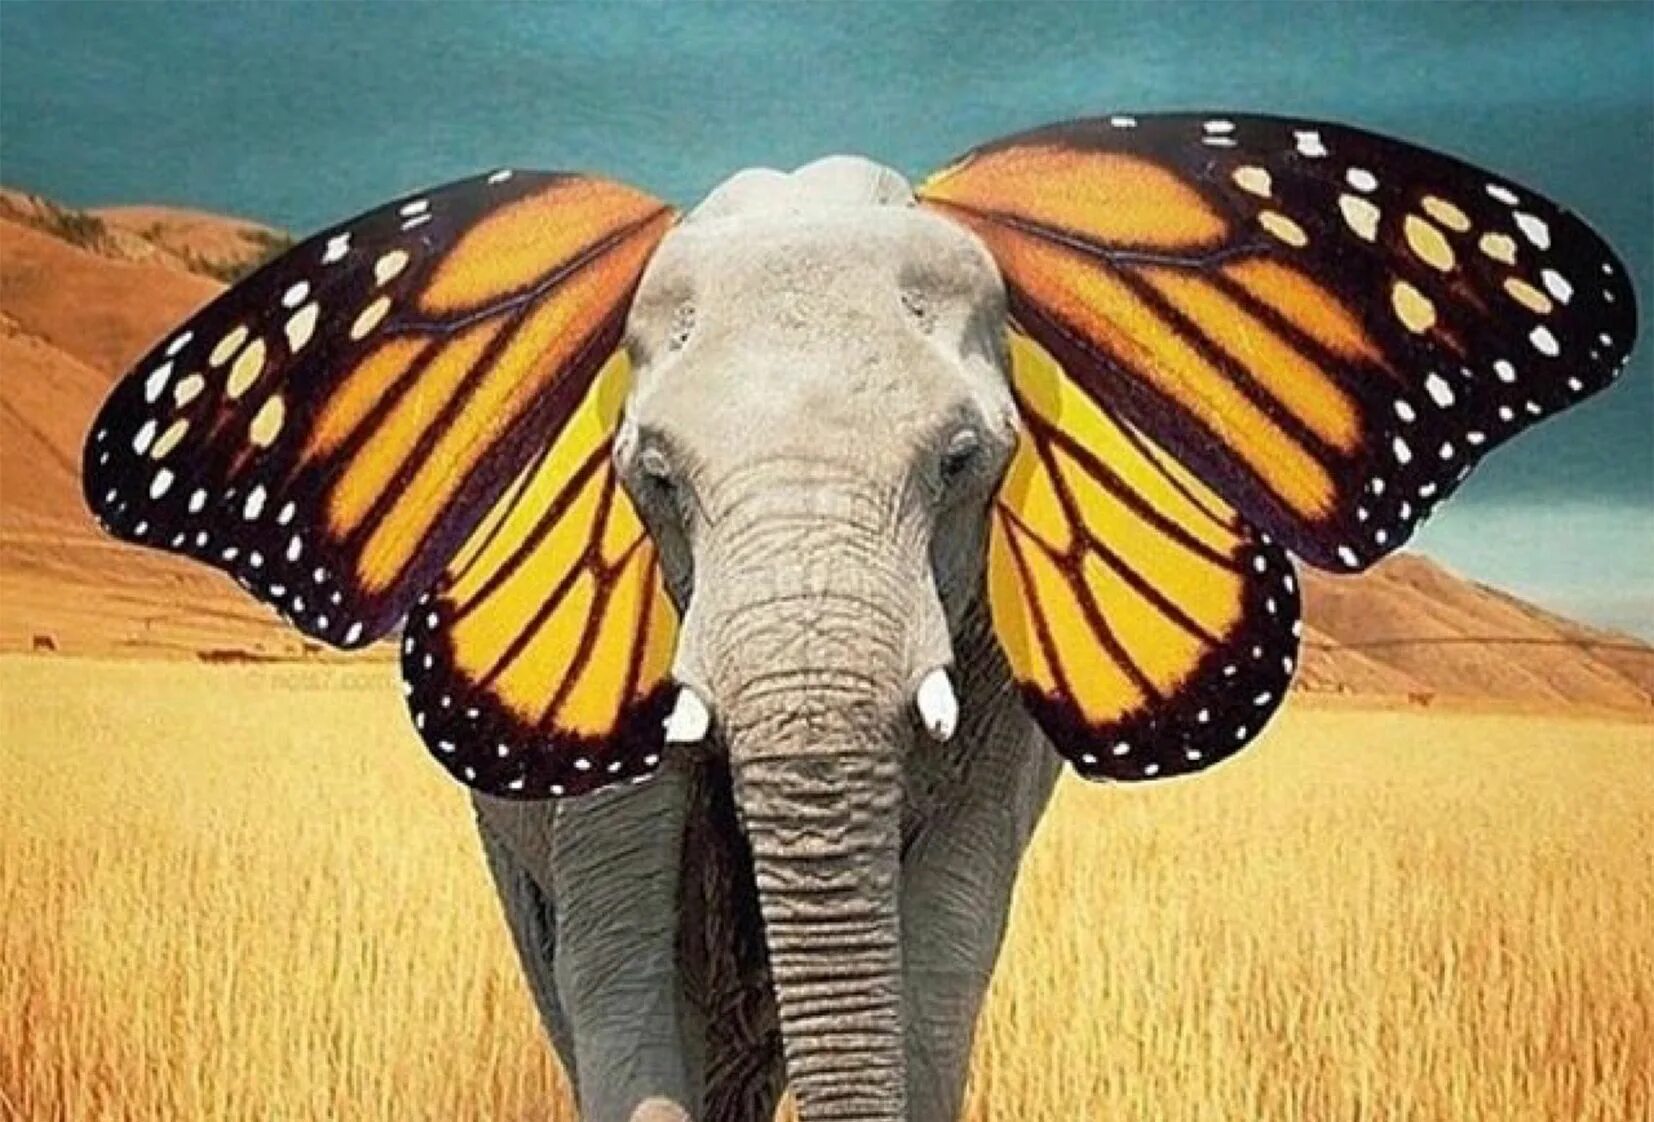 Elephant butterfly. Слон бабочка. Слон с ушами бабочки. Слоновая бабочка. Слон с крыльями бабочки.